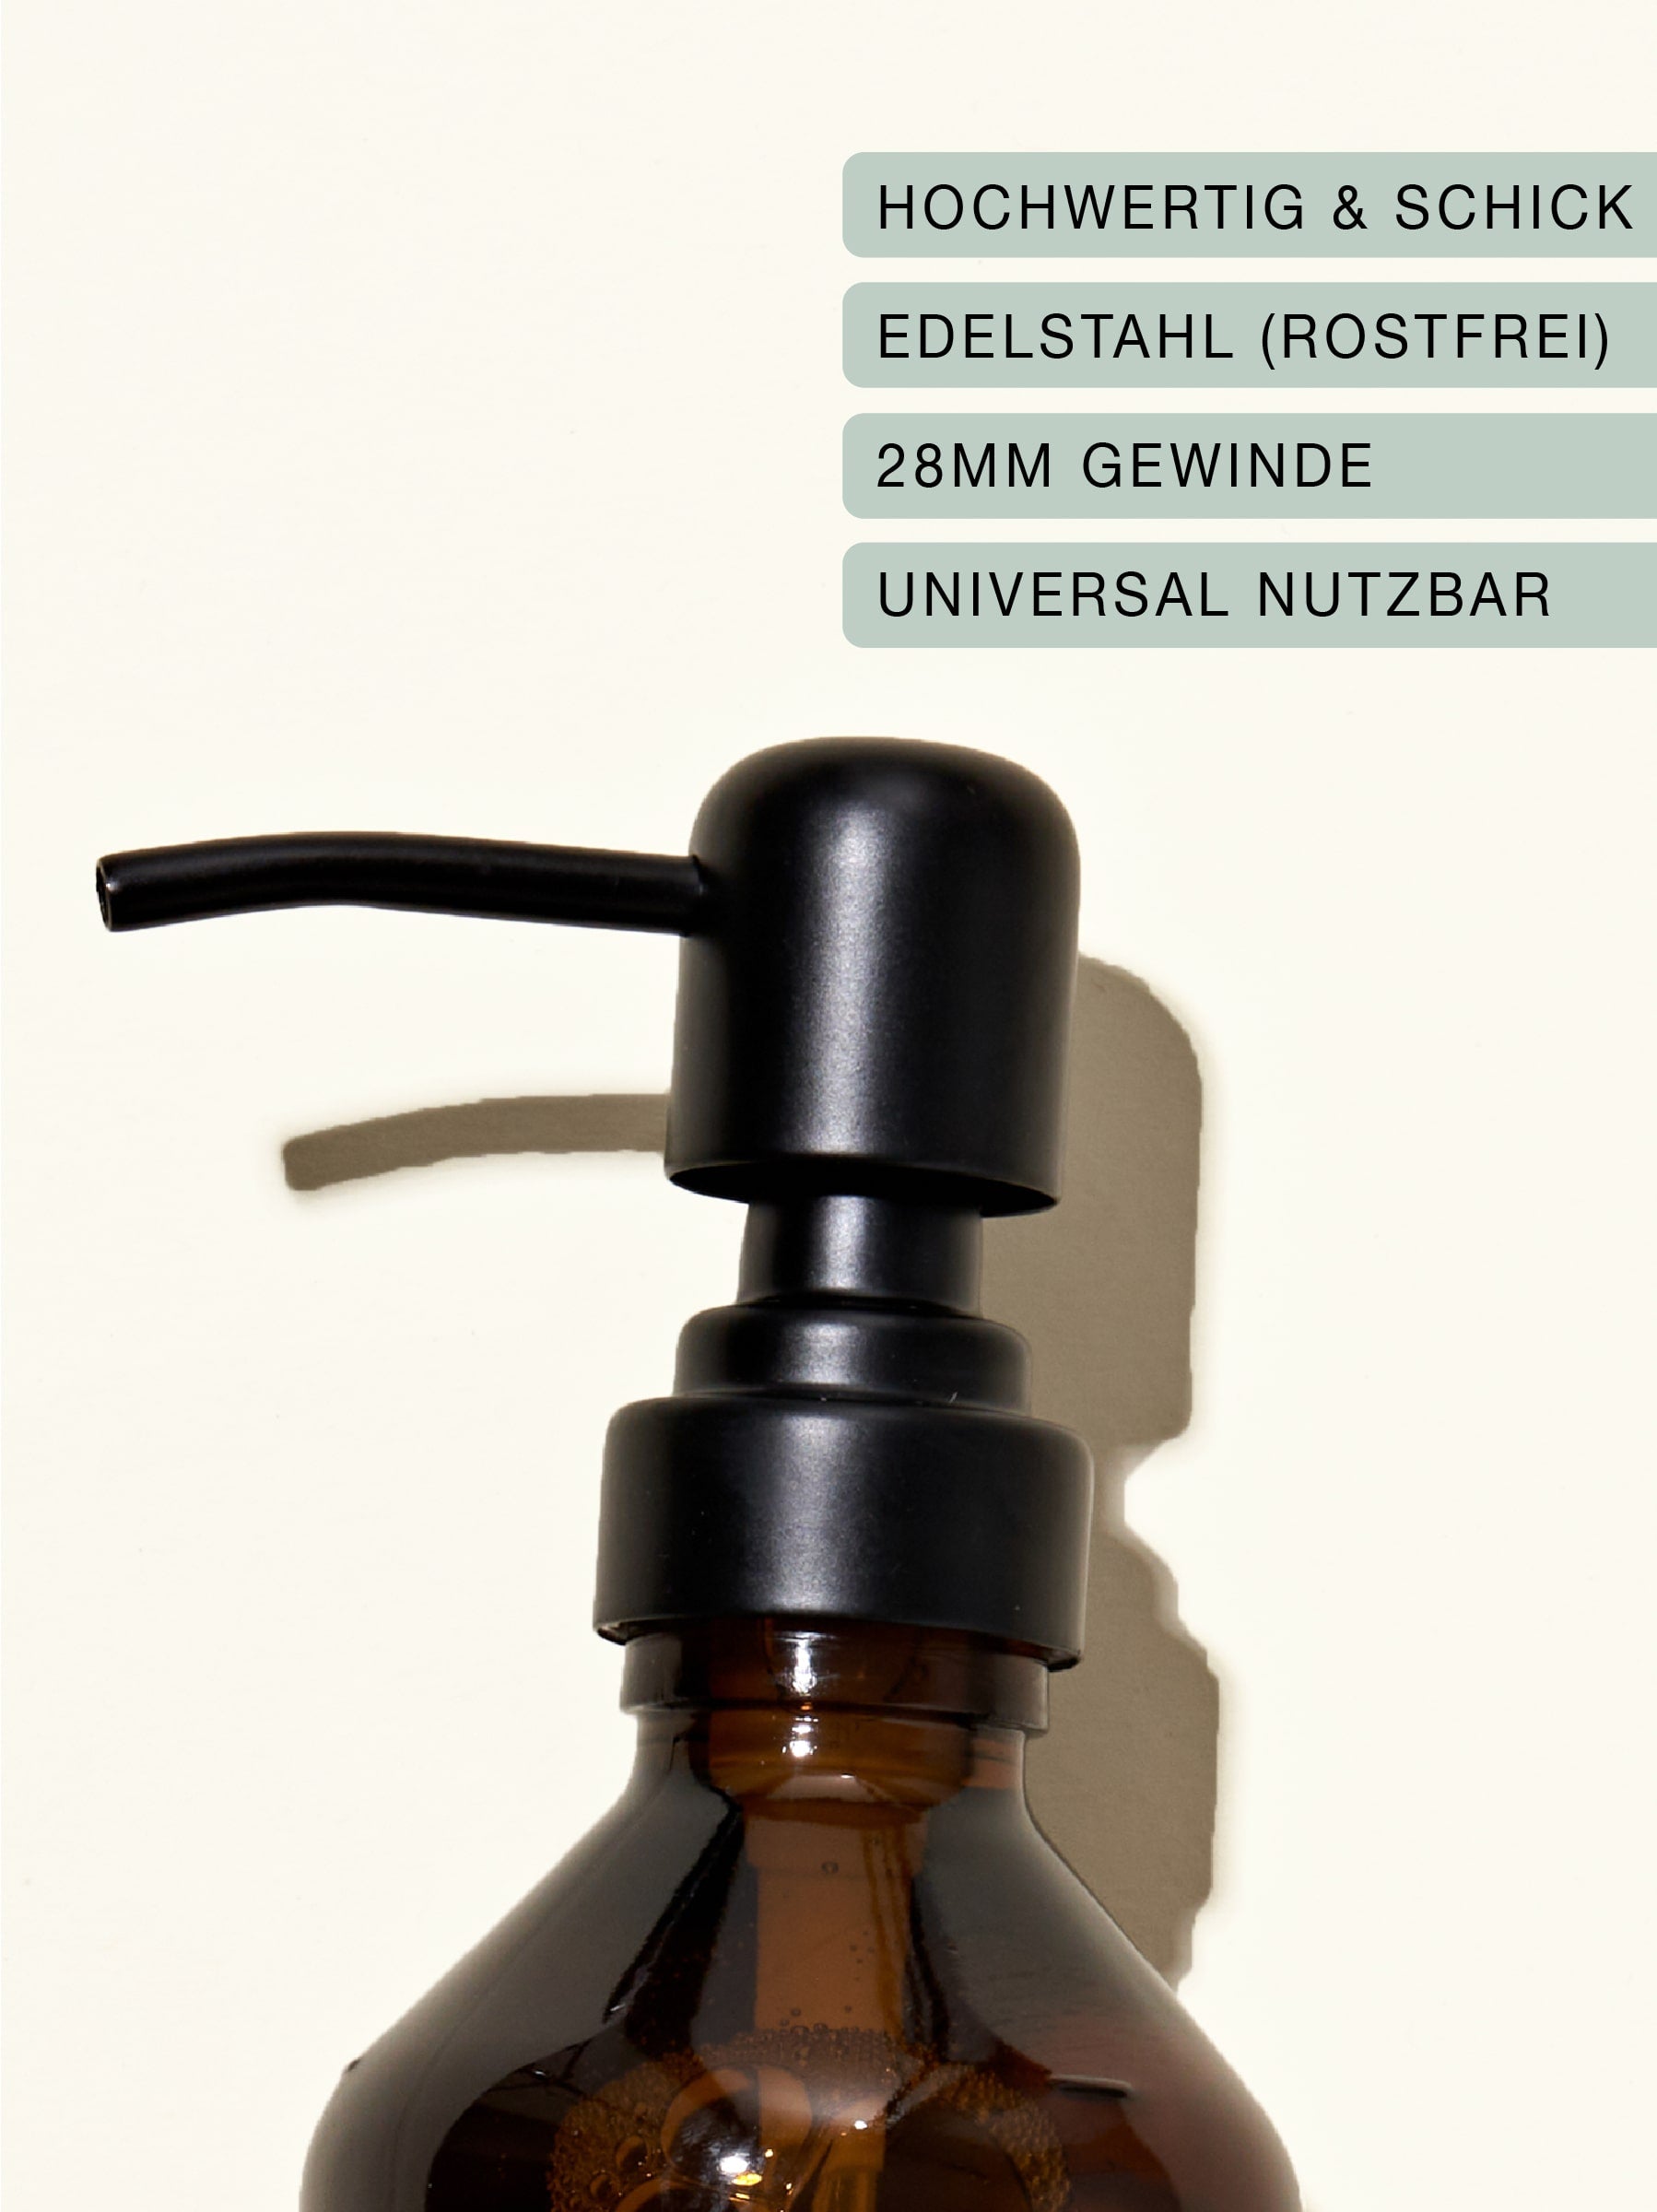 Edelstahl-Pumpspender auf einer Braunglasflasche